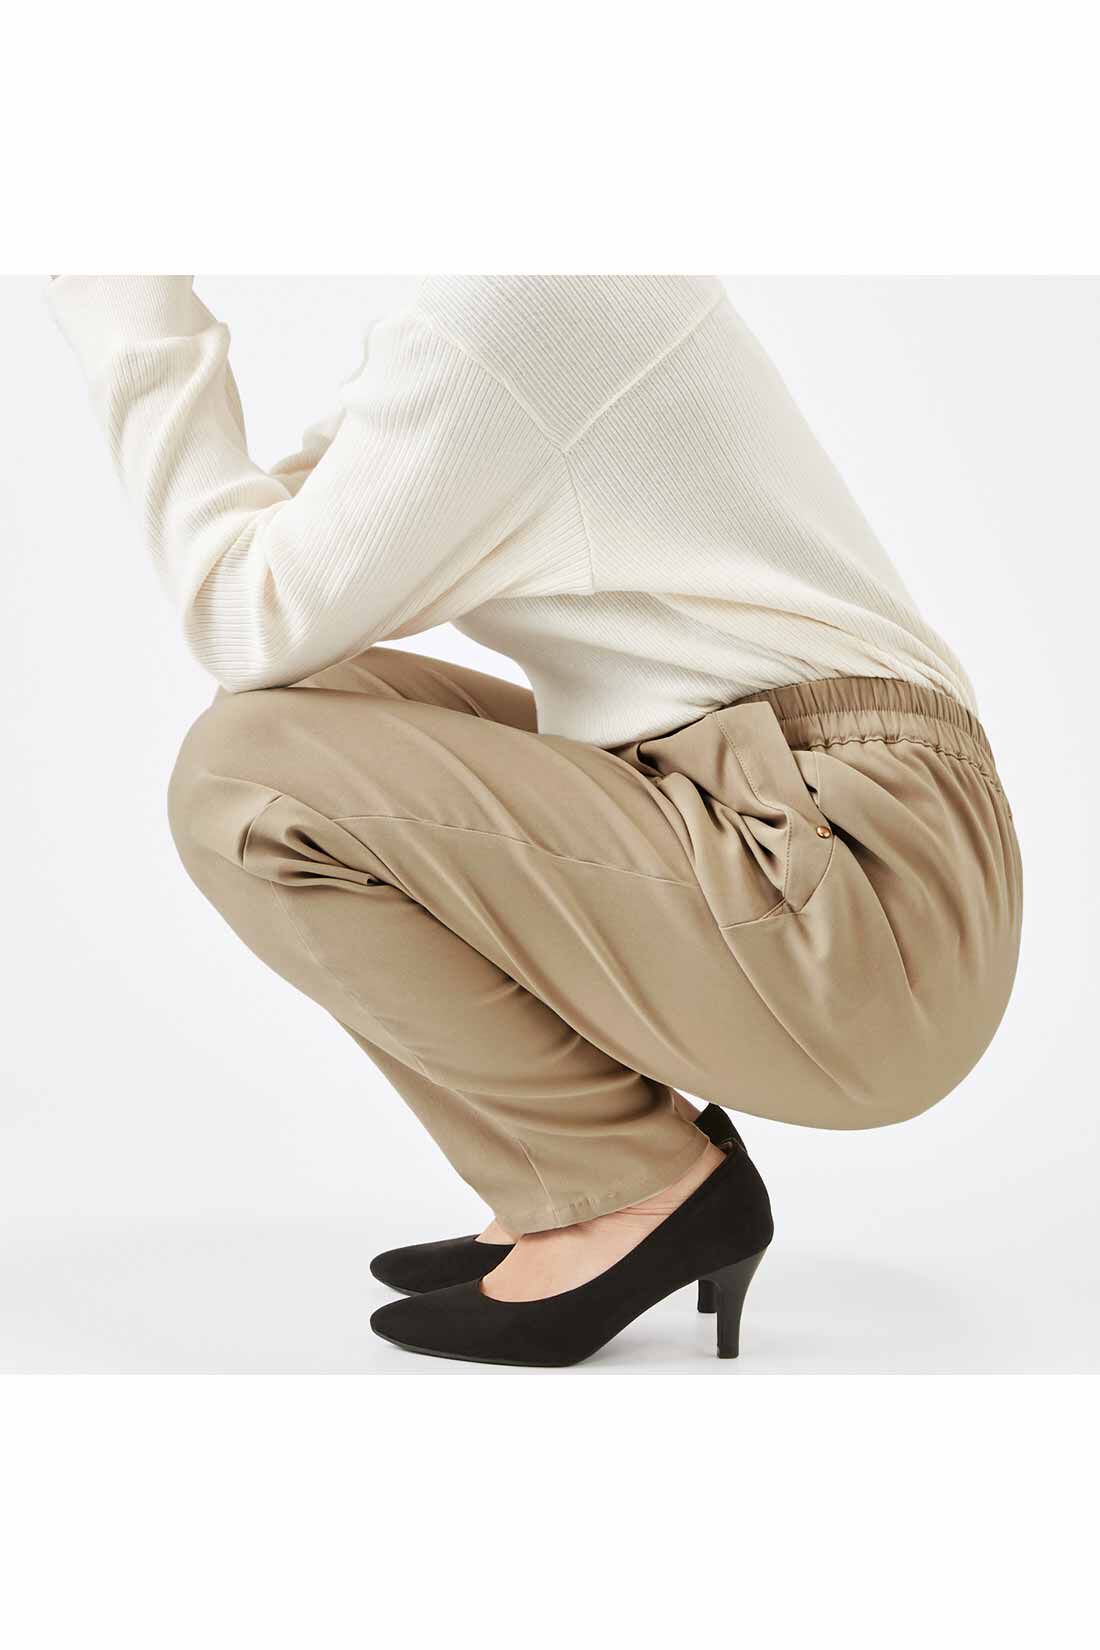 IEDIT[イディット]　ぐいっとしなやか すらりと美脚！ ストレッチ布はく素材のエアノビワイドパンツ〈ブラック〉|しゃがんでも座りっぱなしでも快適で、ひざやおしりも伸びやからくちん。背中も見えにくくて安心！